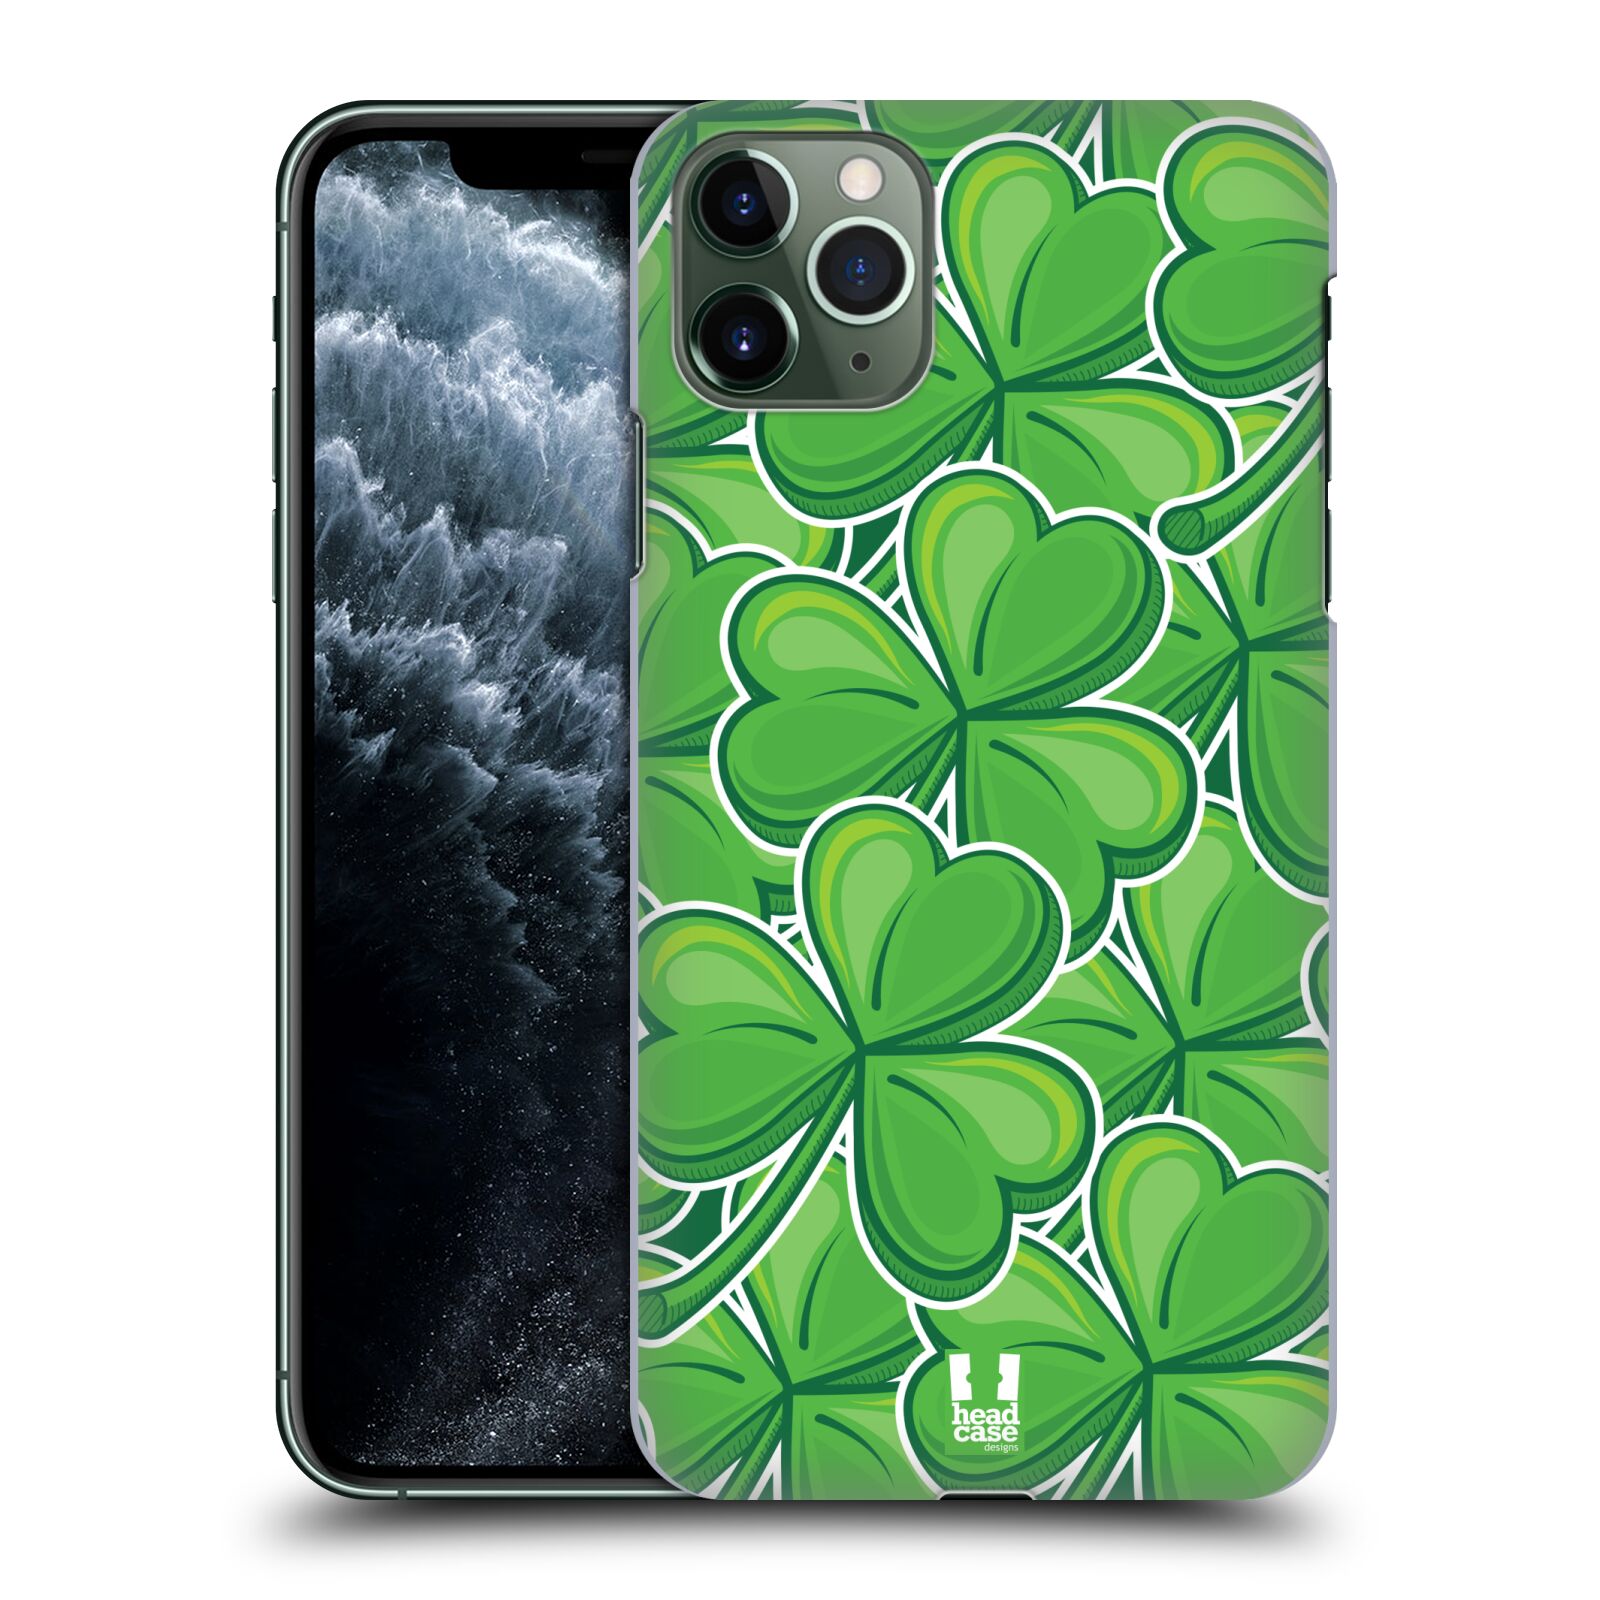 Pouzdro na mobil Apple Iphone 11 PRO MAX - HEAD CASE - vzor Kreslený čyřlístek zelená VELKÉ LÍSTEČKY